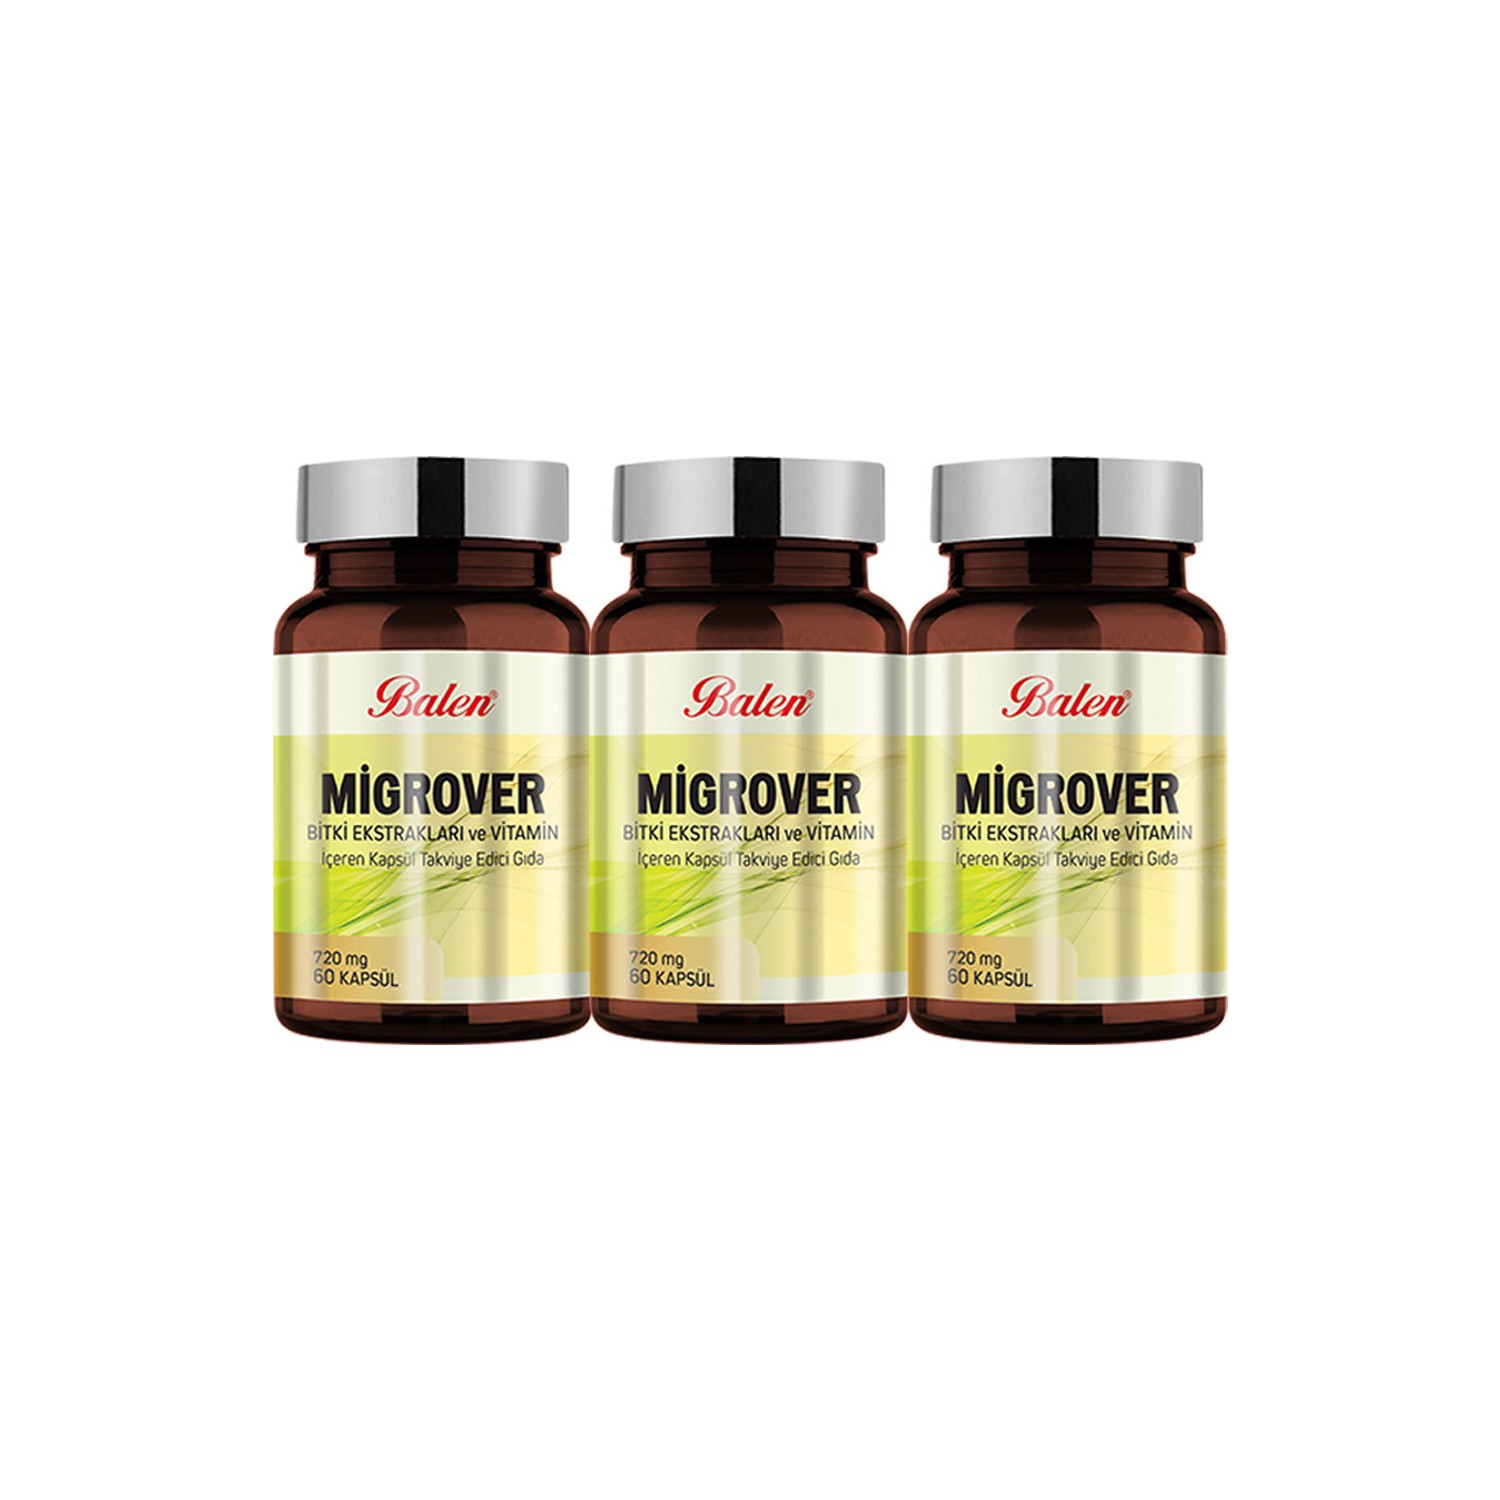 Экстракт трав с витаминами Balen Migrover, 60 капсул, 3 штуки пищевая добавка balen migrover с растительными экстрактами и витаминами 720 мг 3 упаковки по 60 капсул